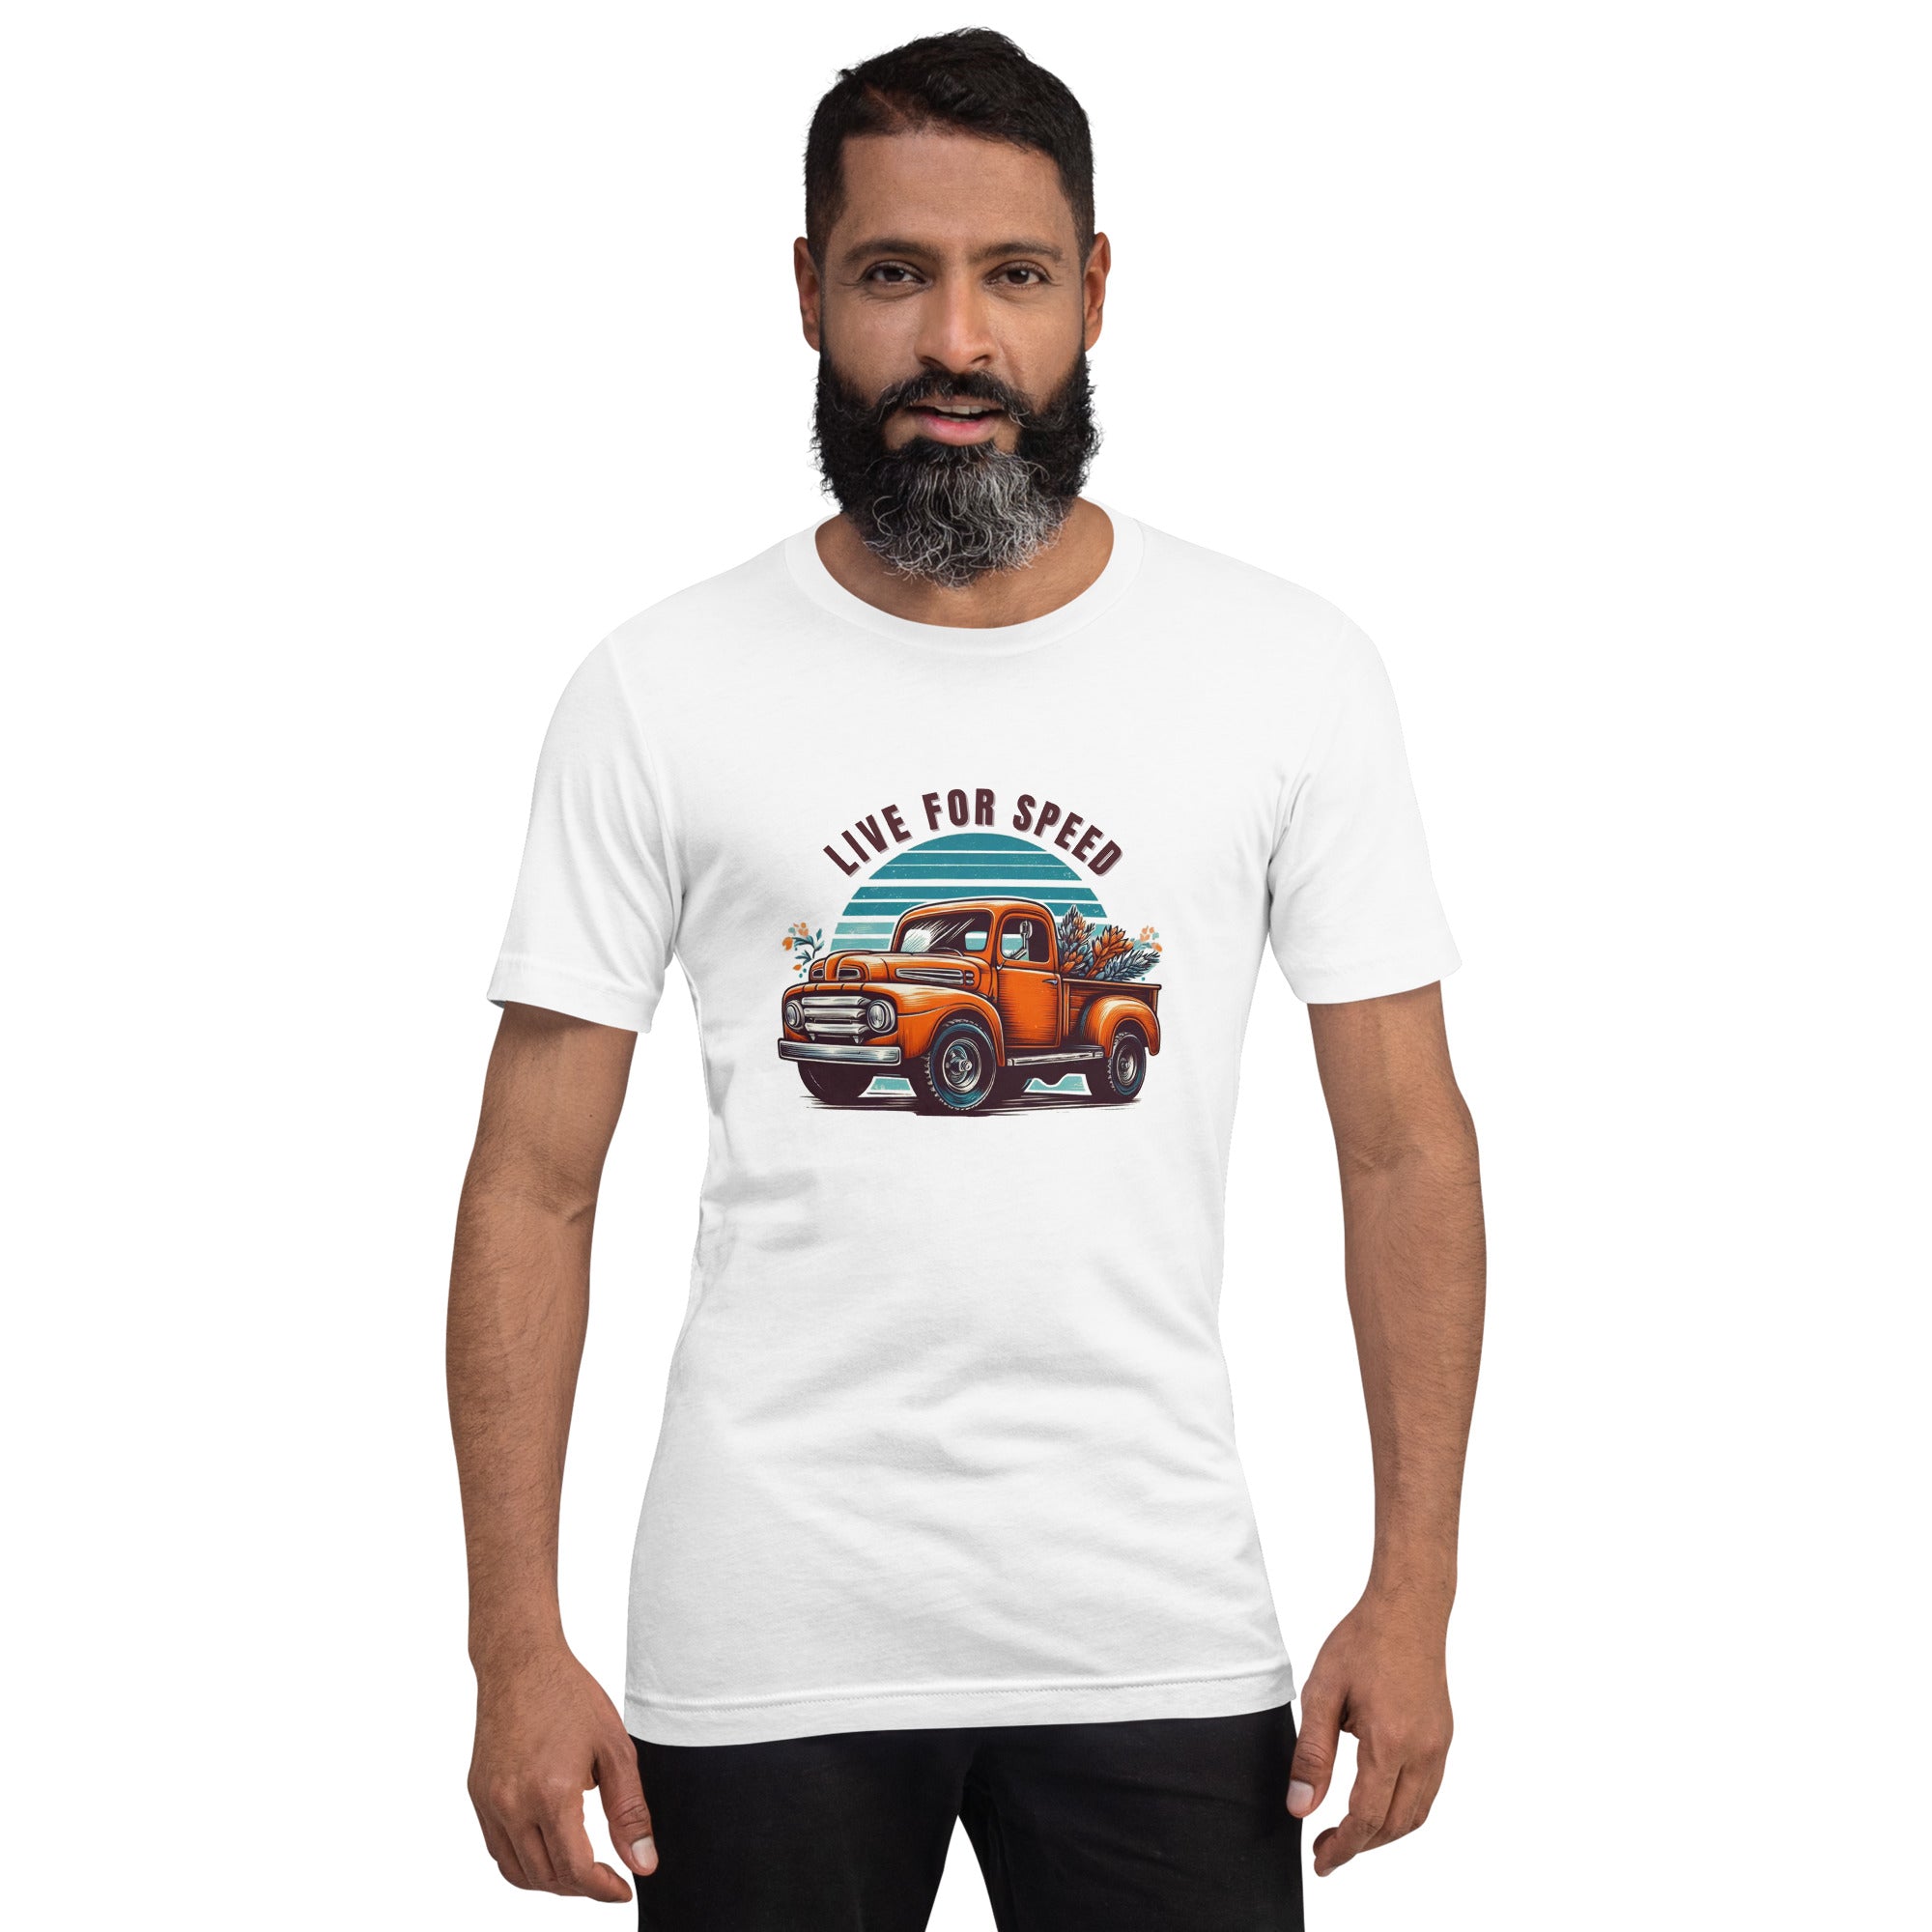 Live for Speed Trucker T-shirt for Men - POD Sarto